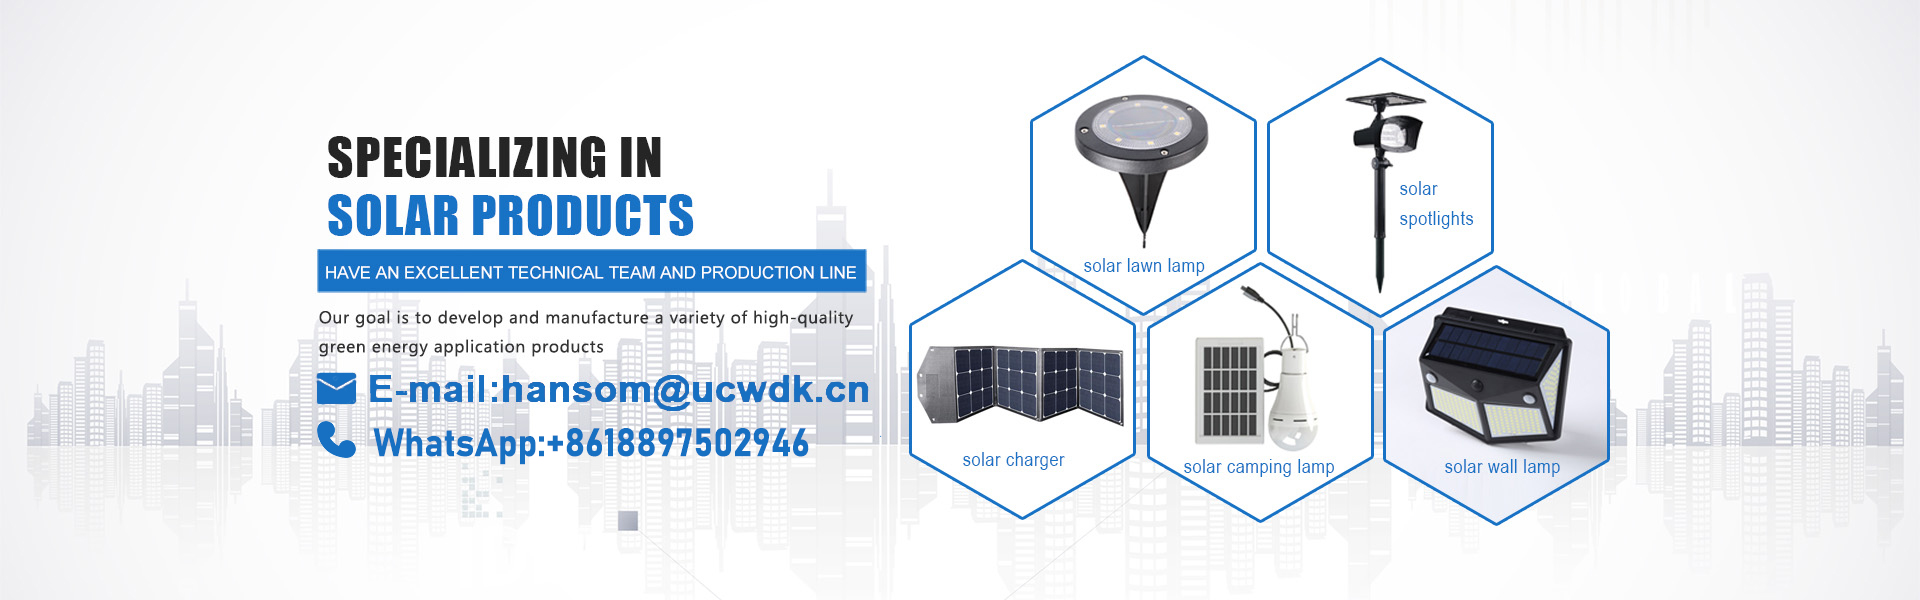 เครื่องชาร์จพลังงานแสงอาทิตย์, แสงอาทิตย์, แผงเซลล์แสงอาทิตย์,UCWDK Solar Technology Co. Ltd.